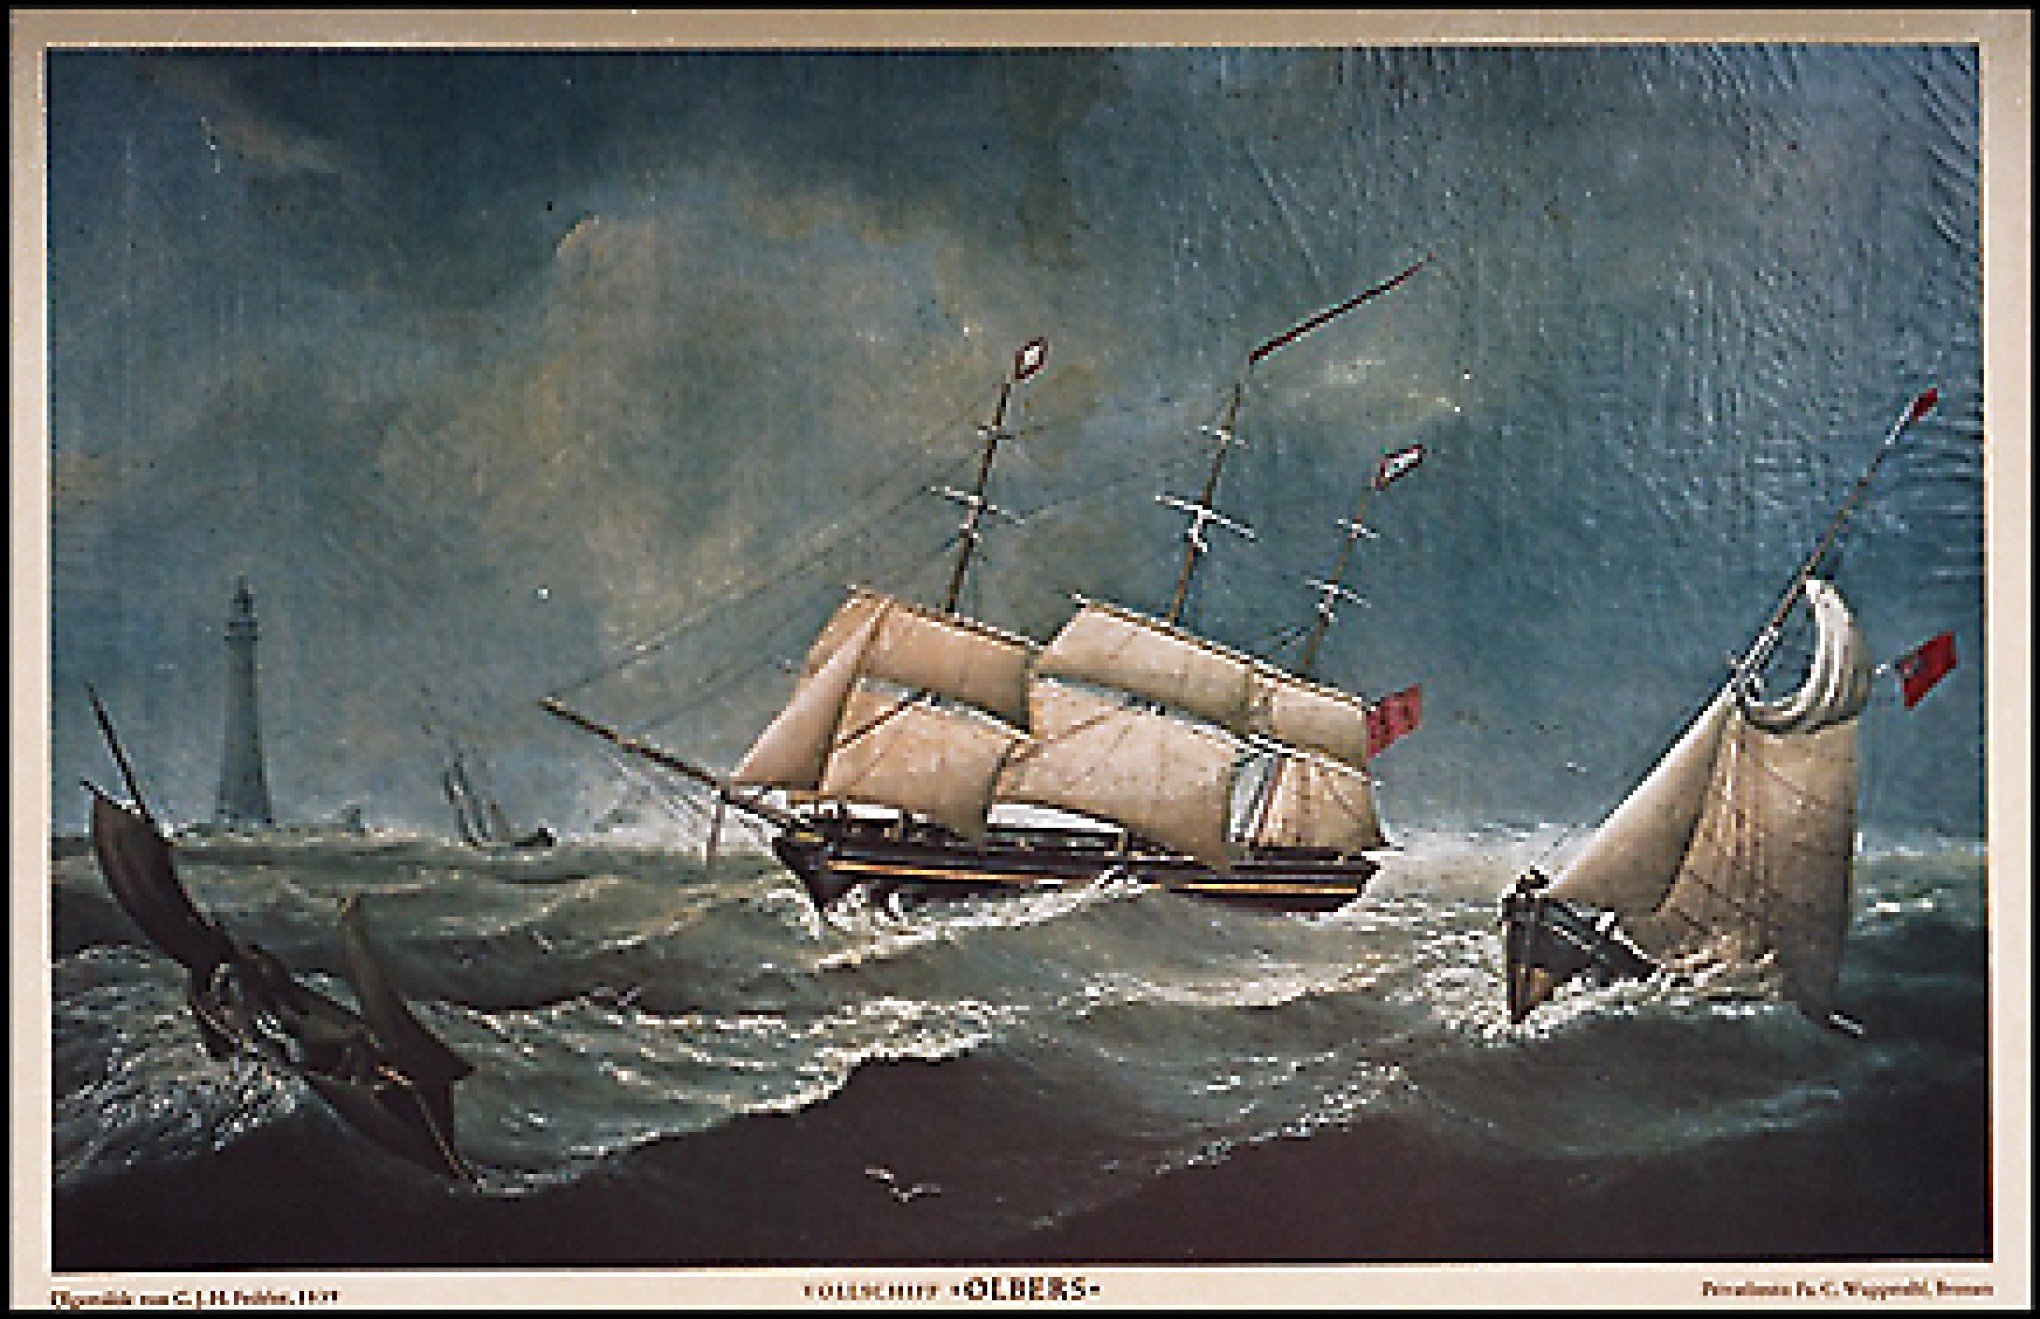 CURIOSIDADES DA IMIGRAÇÃO #108: Saiba qual navio quase se chocou contra um rochedo